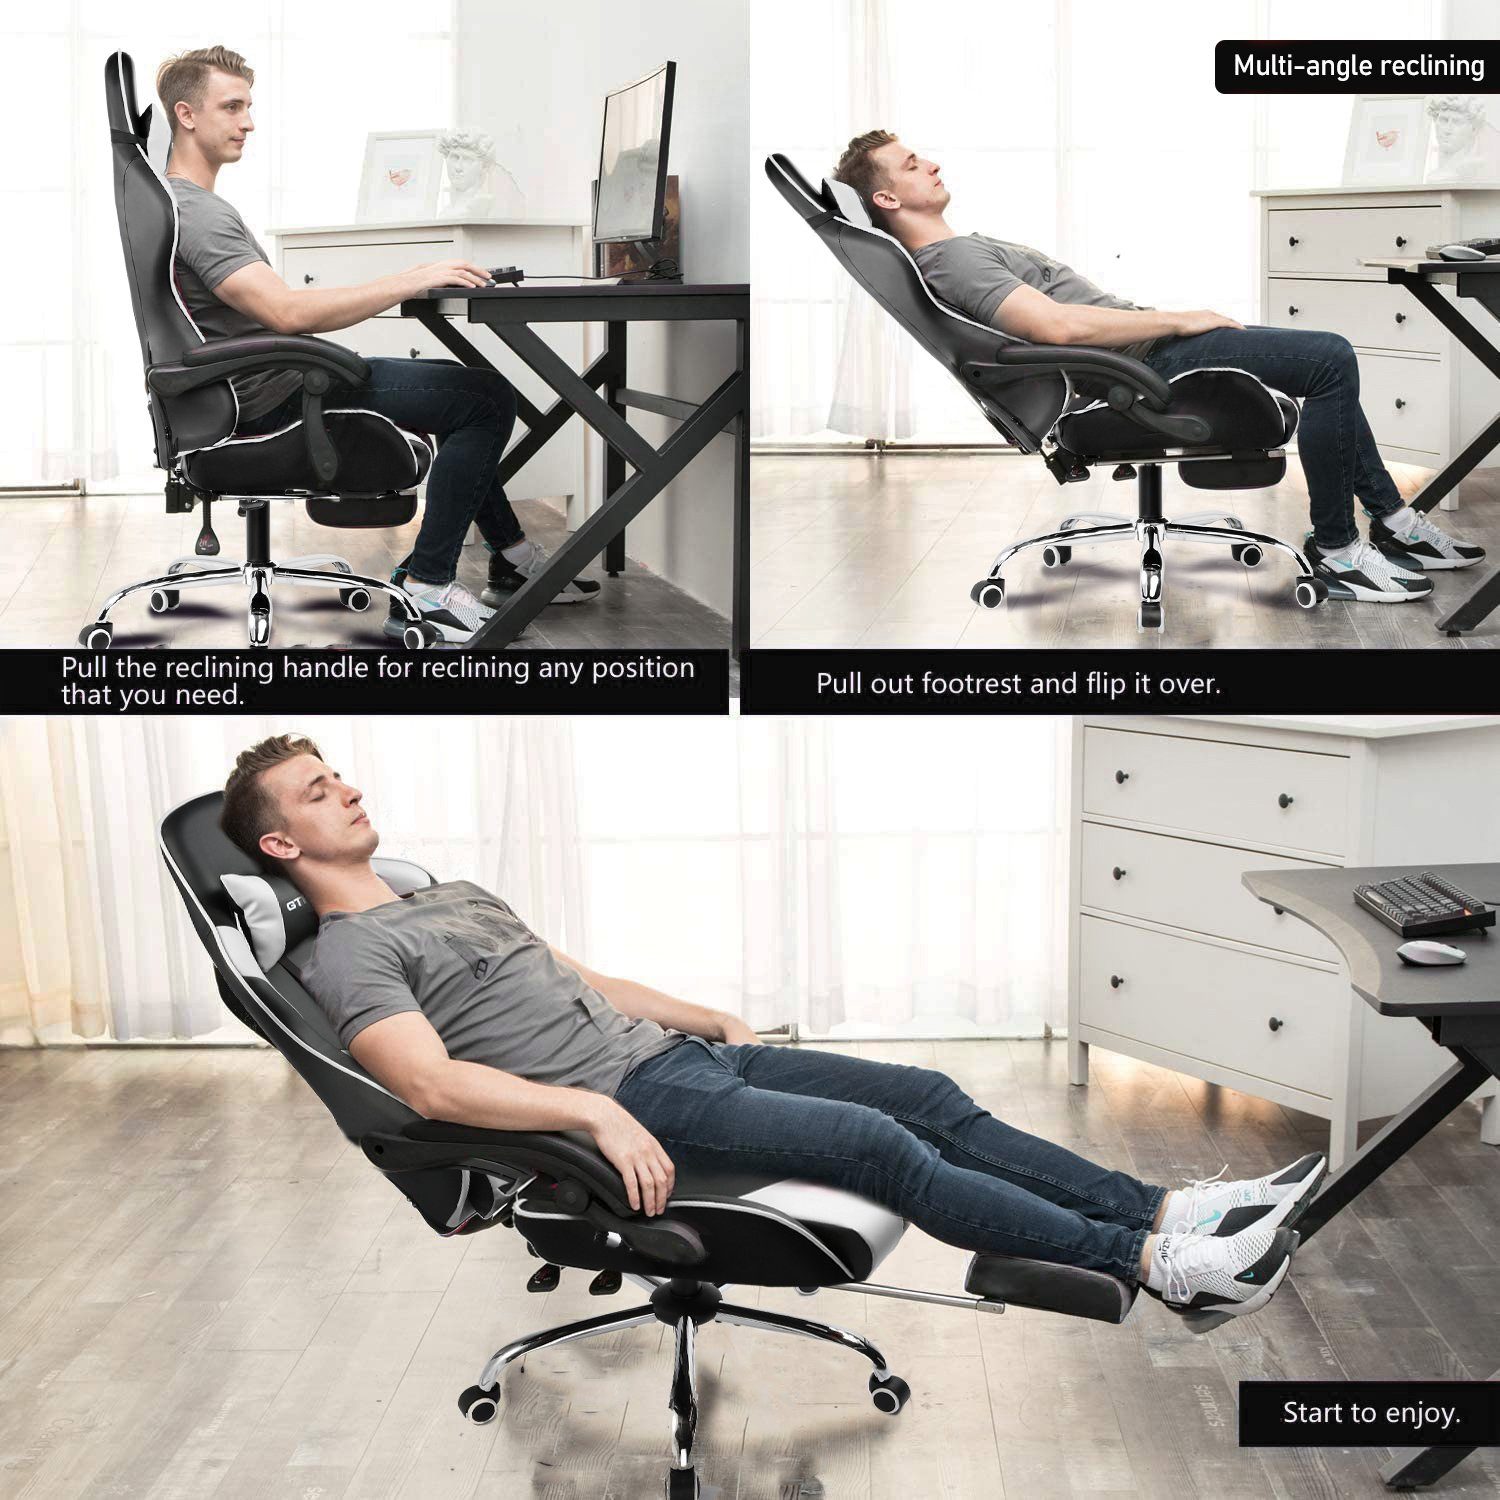 Gaming-Stuhl Rückenlehne Bürostuhl bis 120kg WHITE Zocker GTPLAYER mit Massage-Lendenkissen mit Fußstütze und belastbar, Hohe Stuhl, Verbindungsarmlehnen